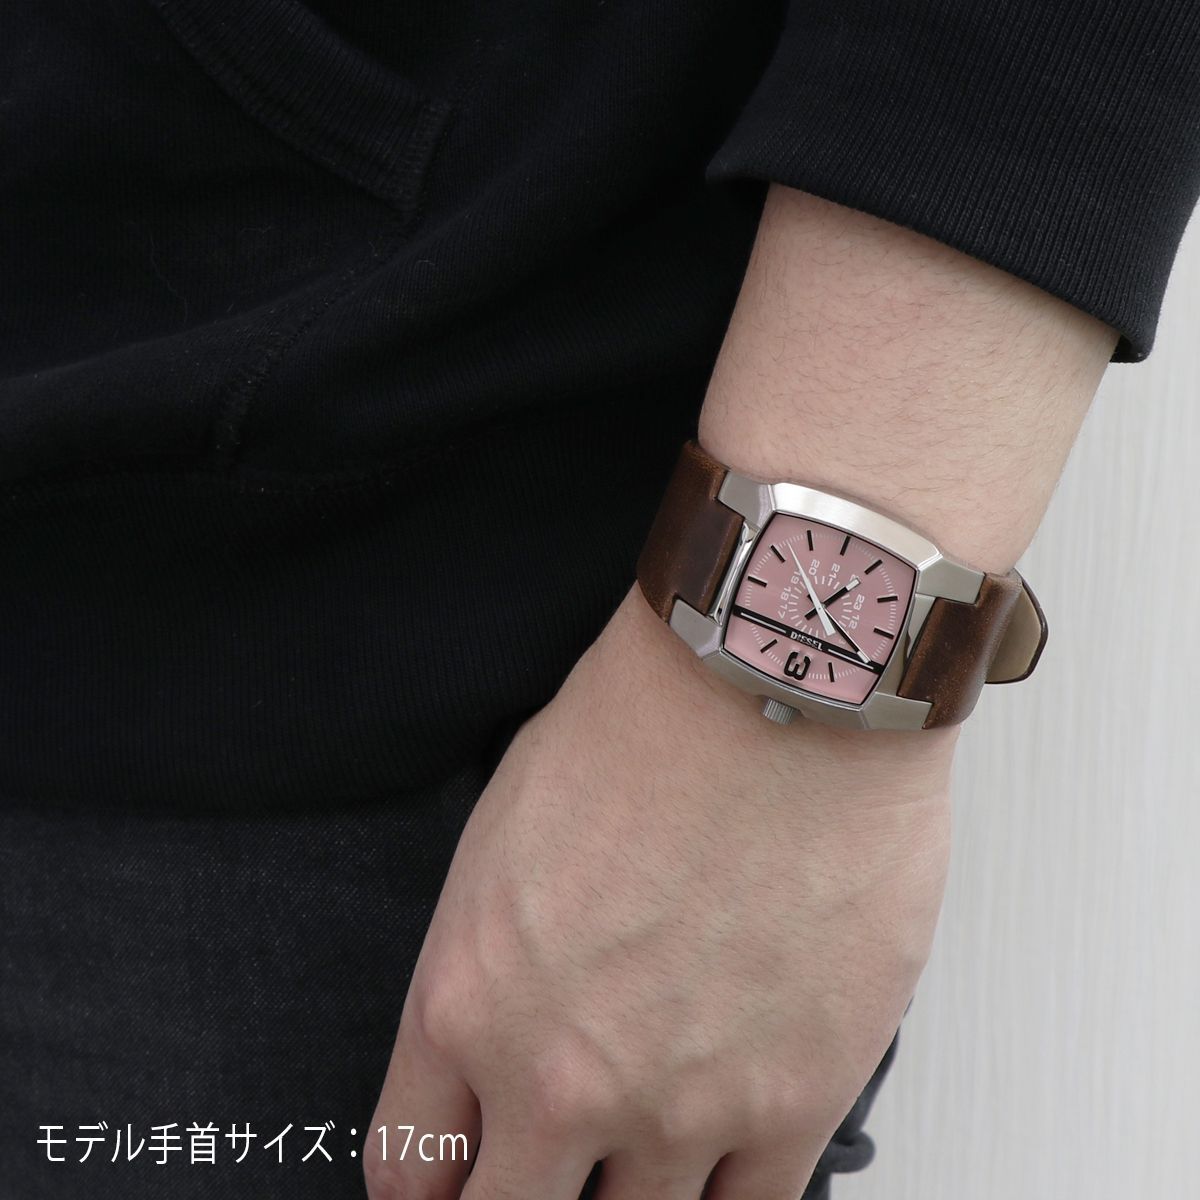 ディーゼル DIESEL クリフハンガー DZ1999 付属品完備 腕時計 - 腕時計